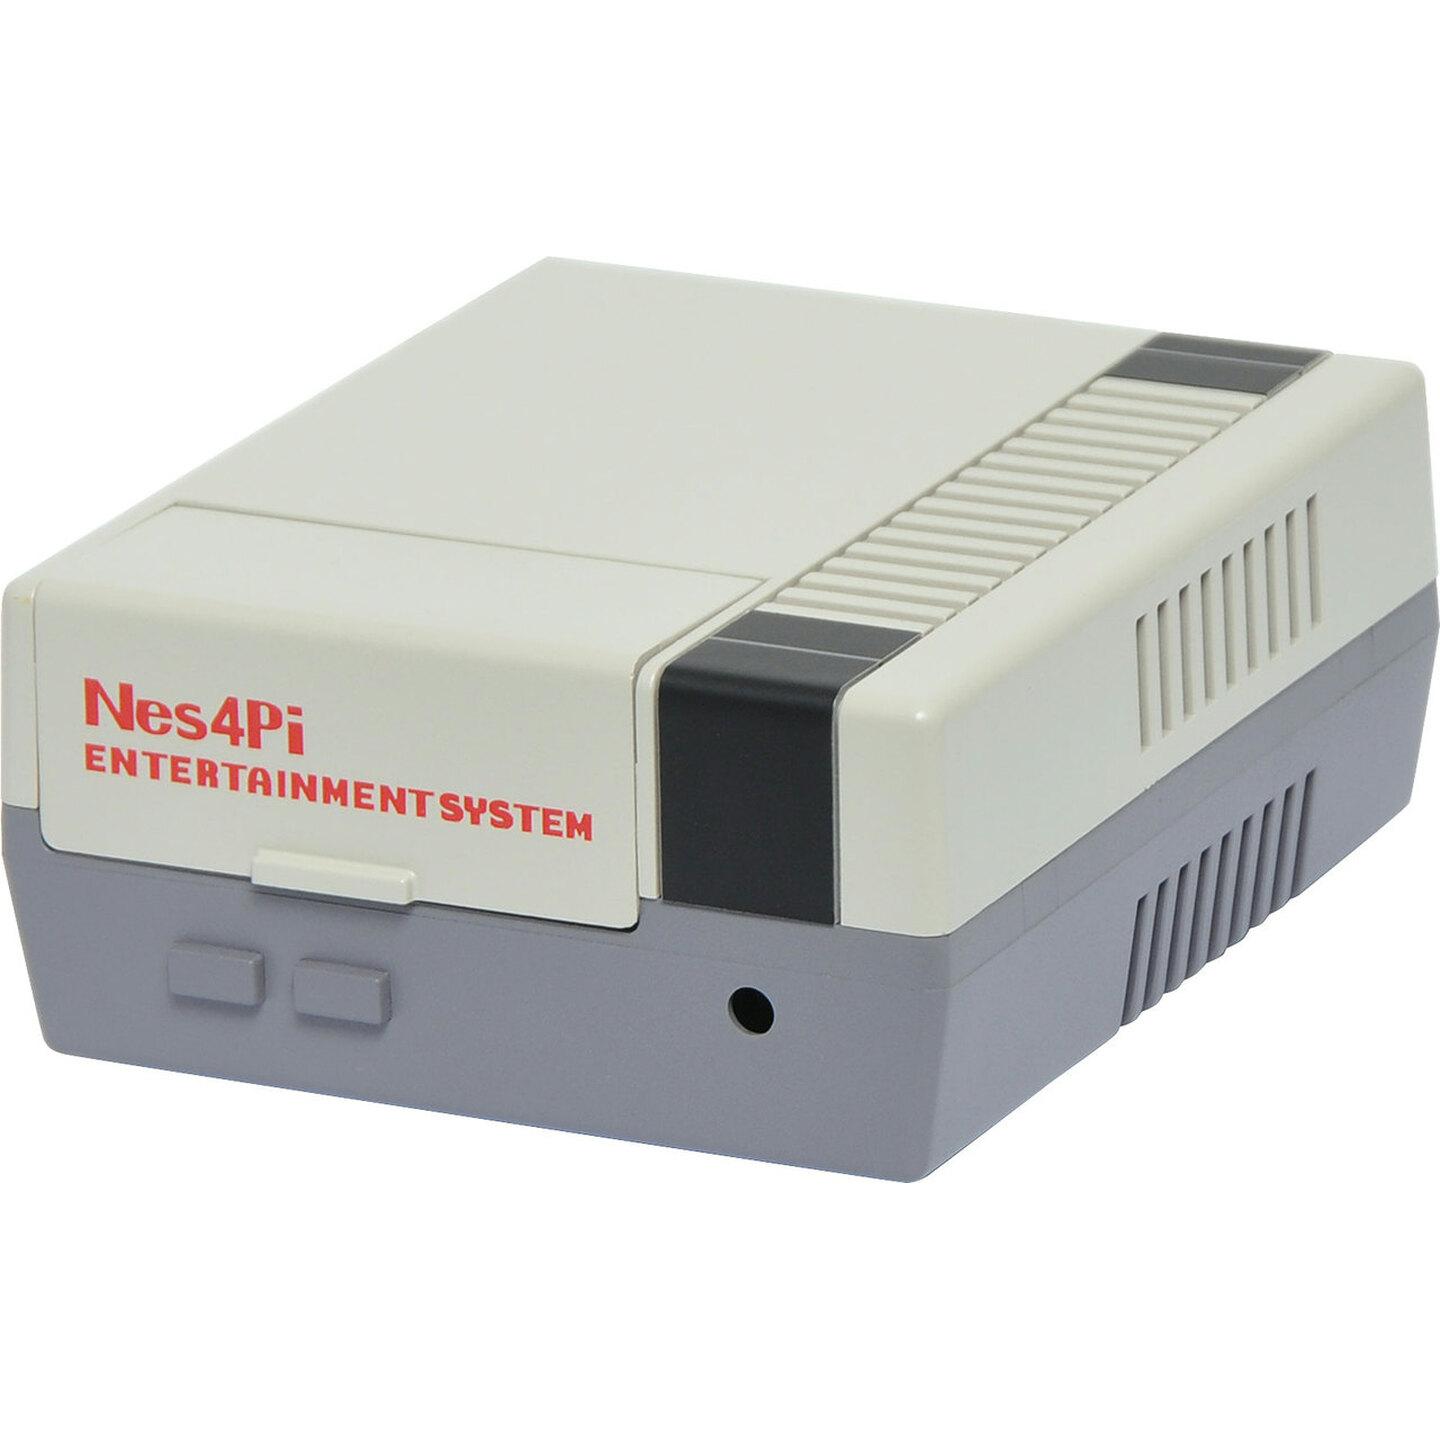 Duinotech Retro NES Gaming Case for Raspberry Pi 4